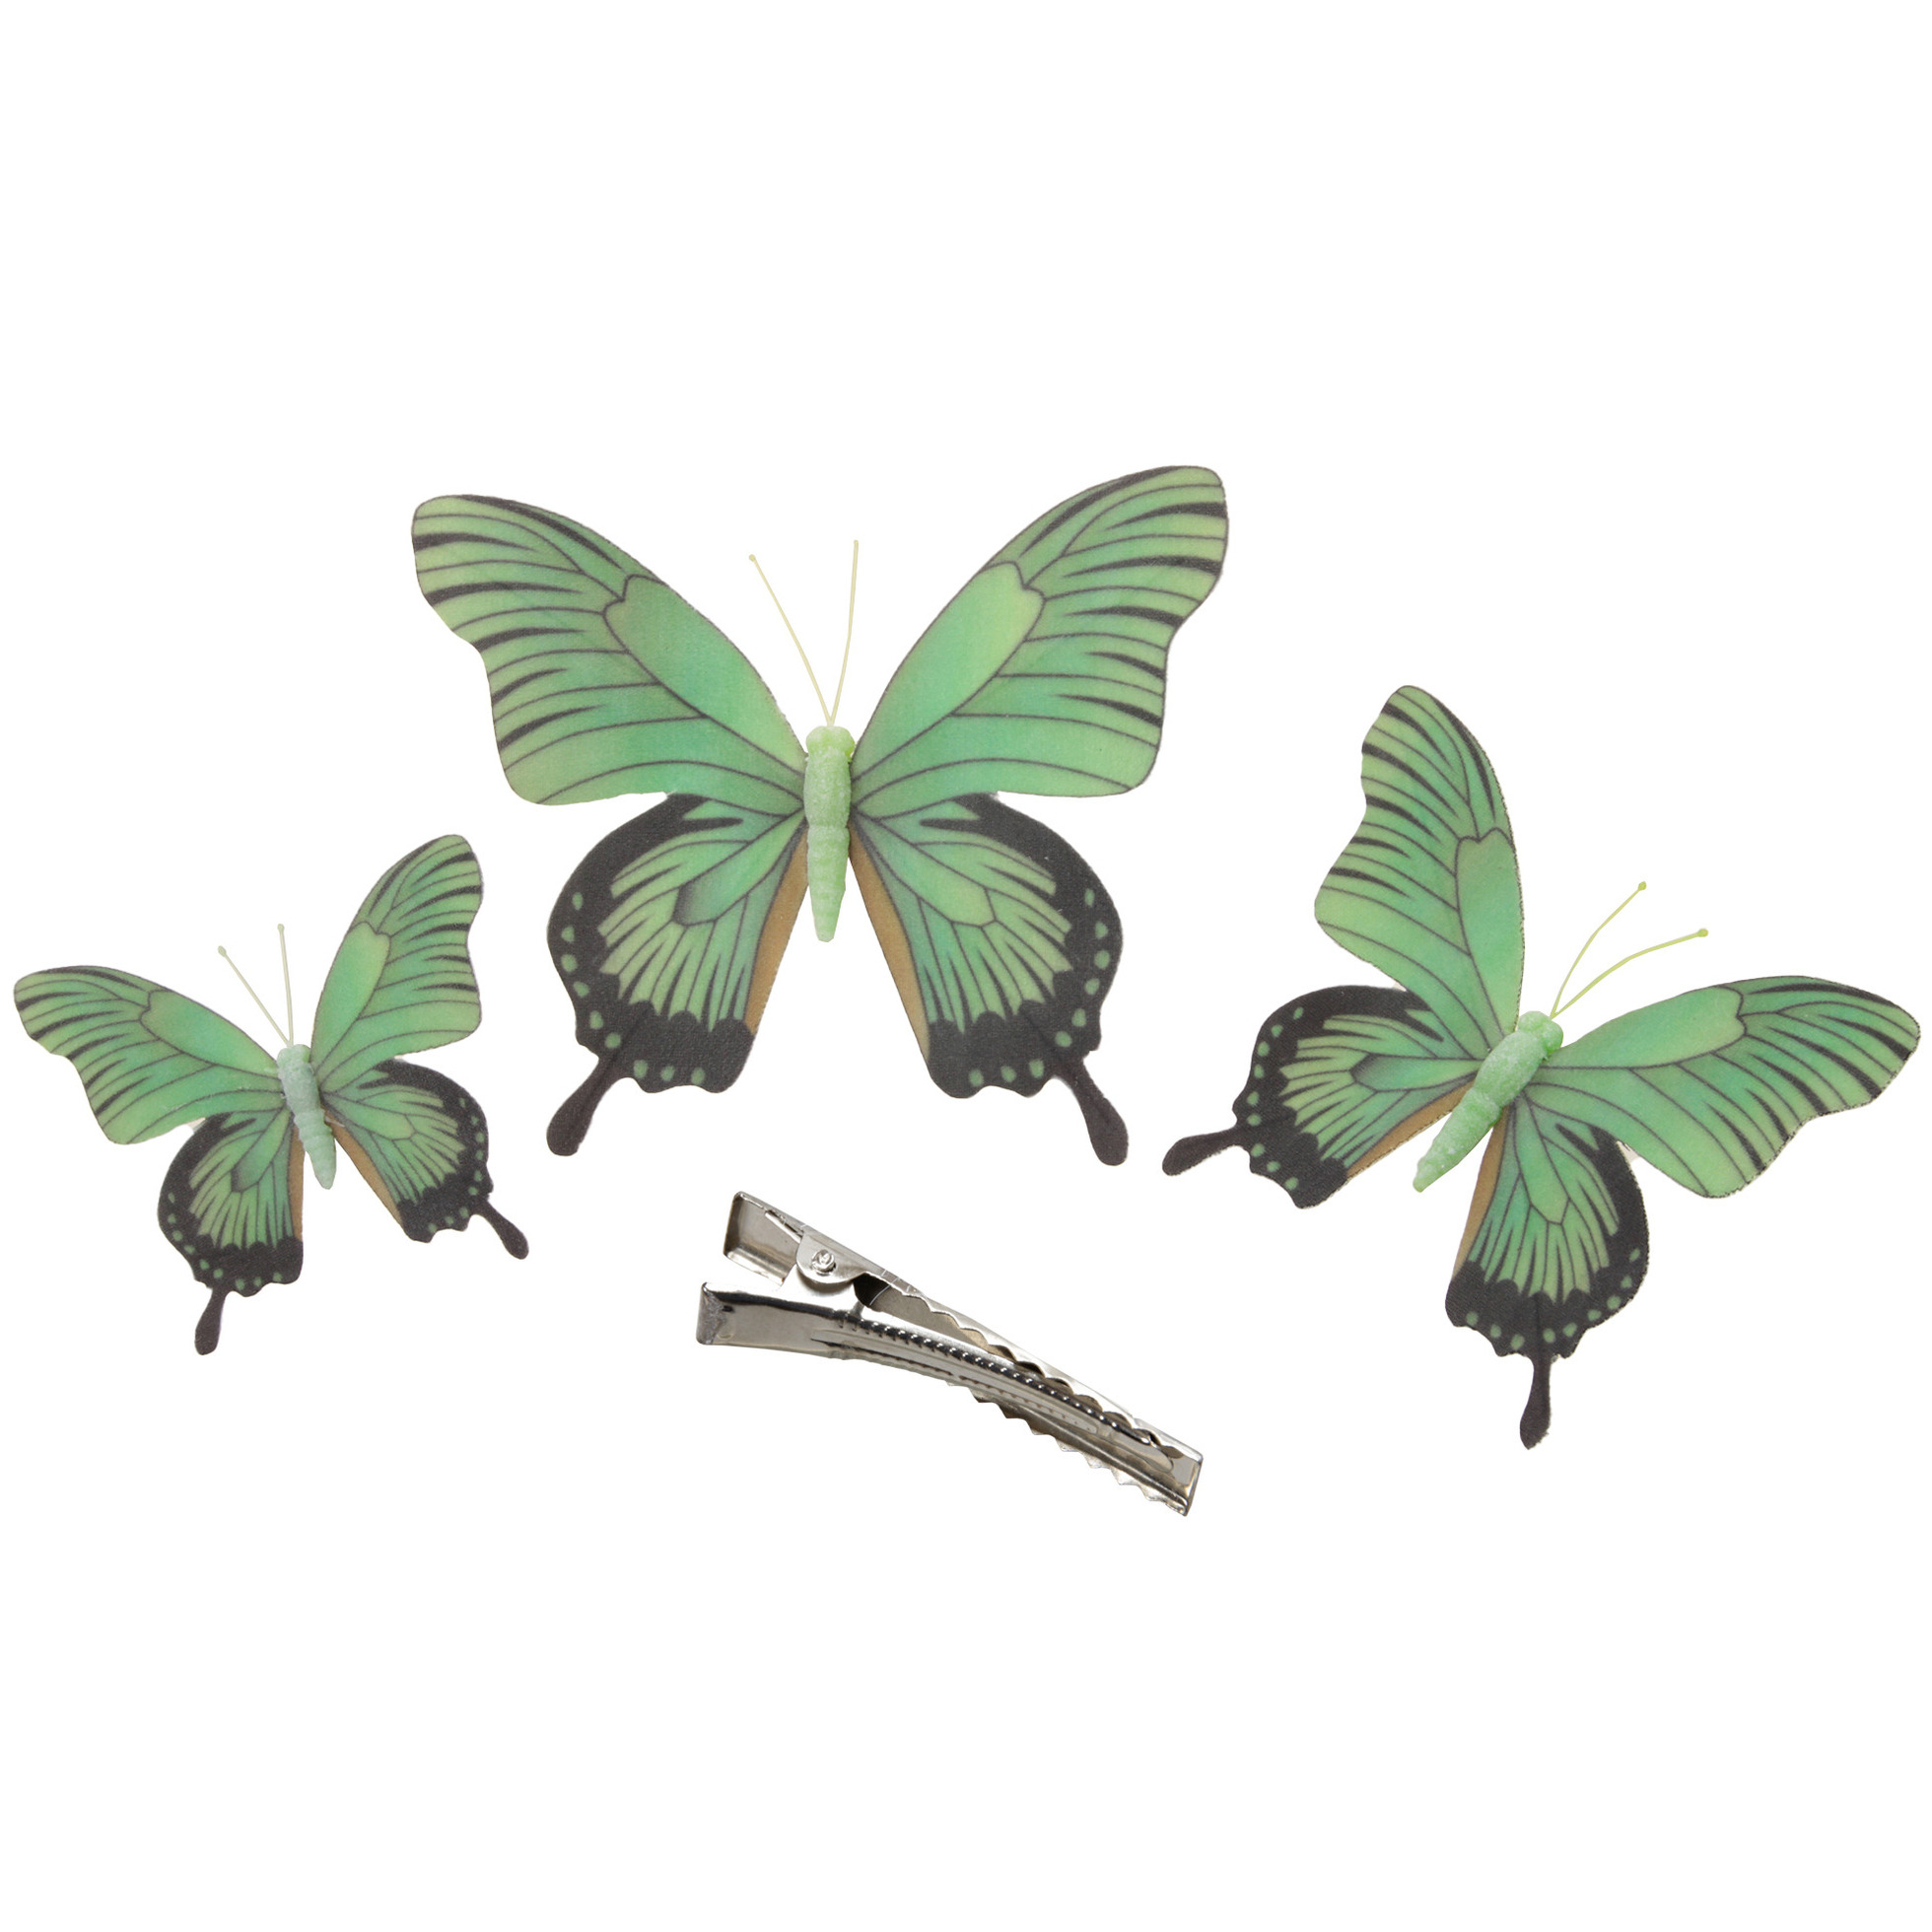 3x stuks decoratie vlinders op clip groen 3 formaten 12-16-20 cm